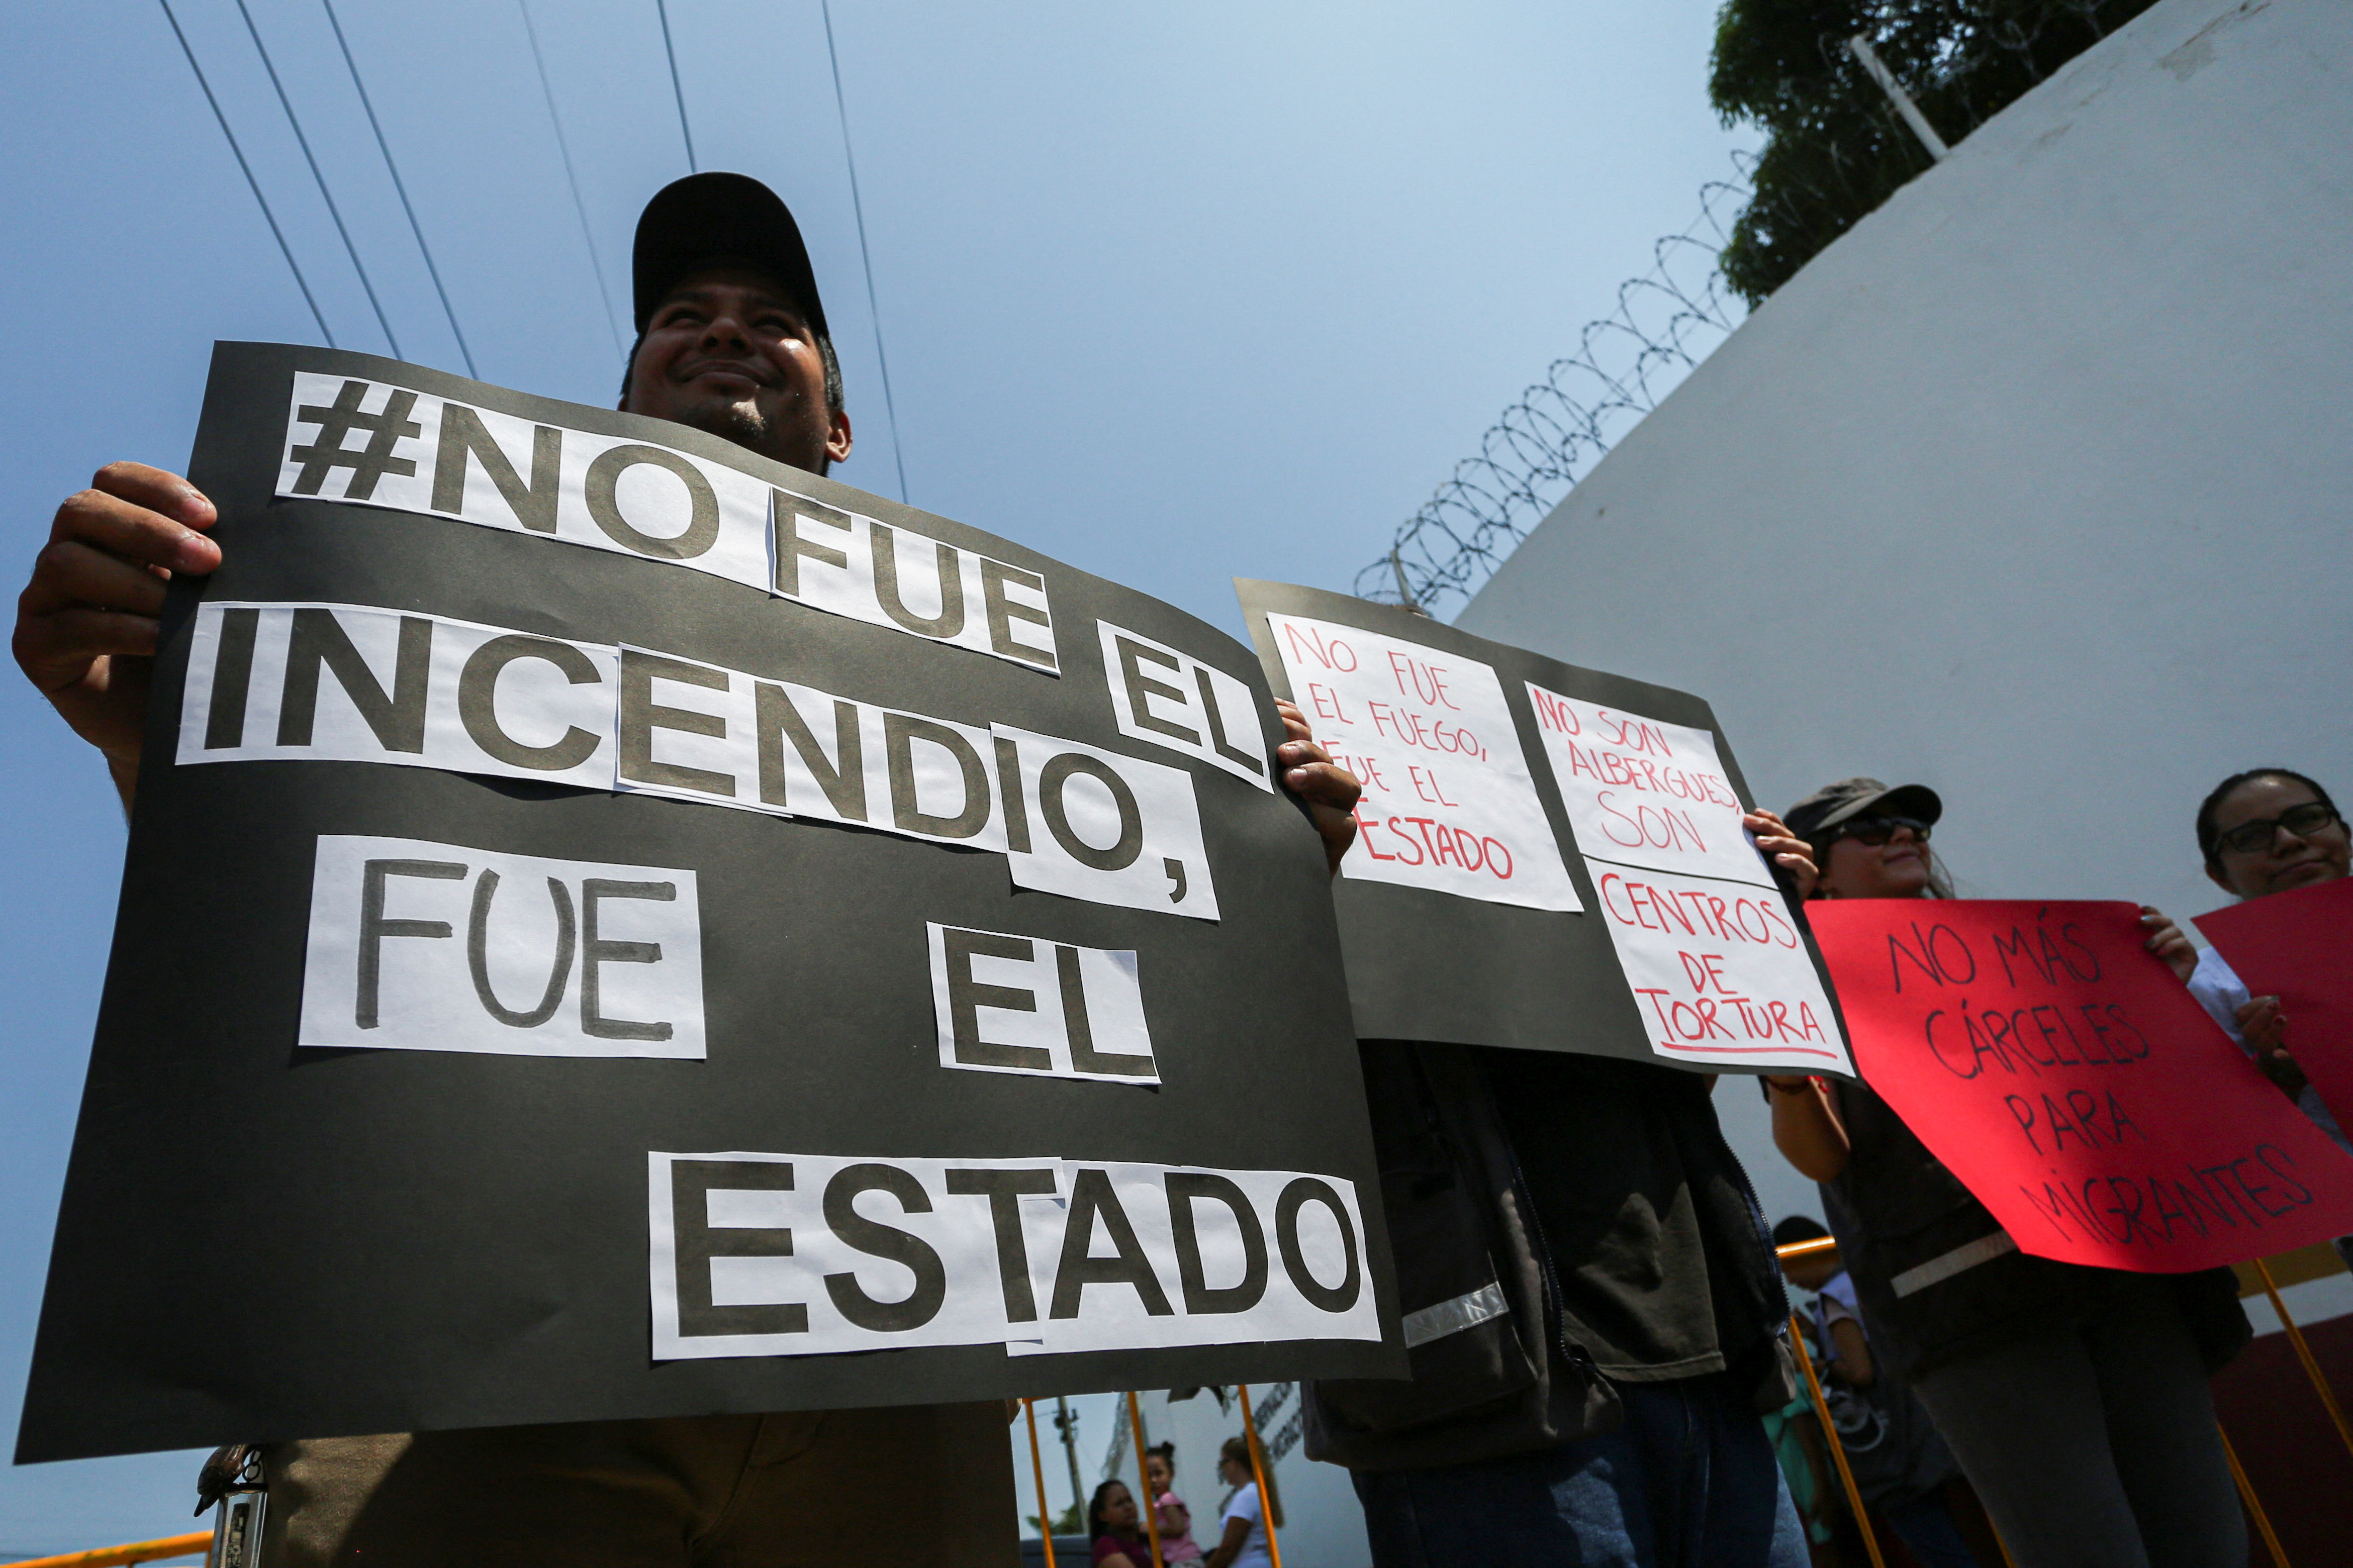 AMLO pedirá transparencia al INM por la tragedia de Ciudad Juárez: “No hay que ocultar las cosas”